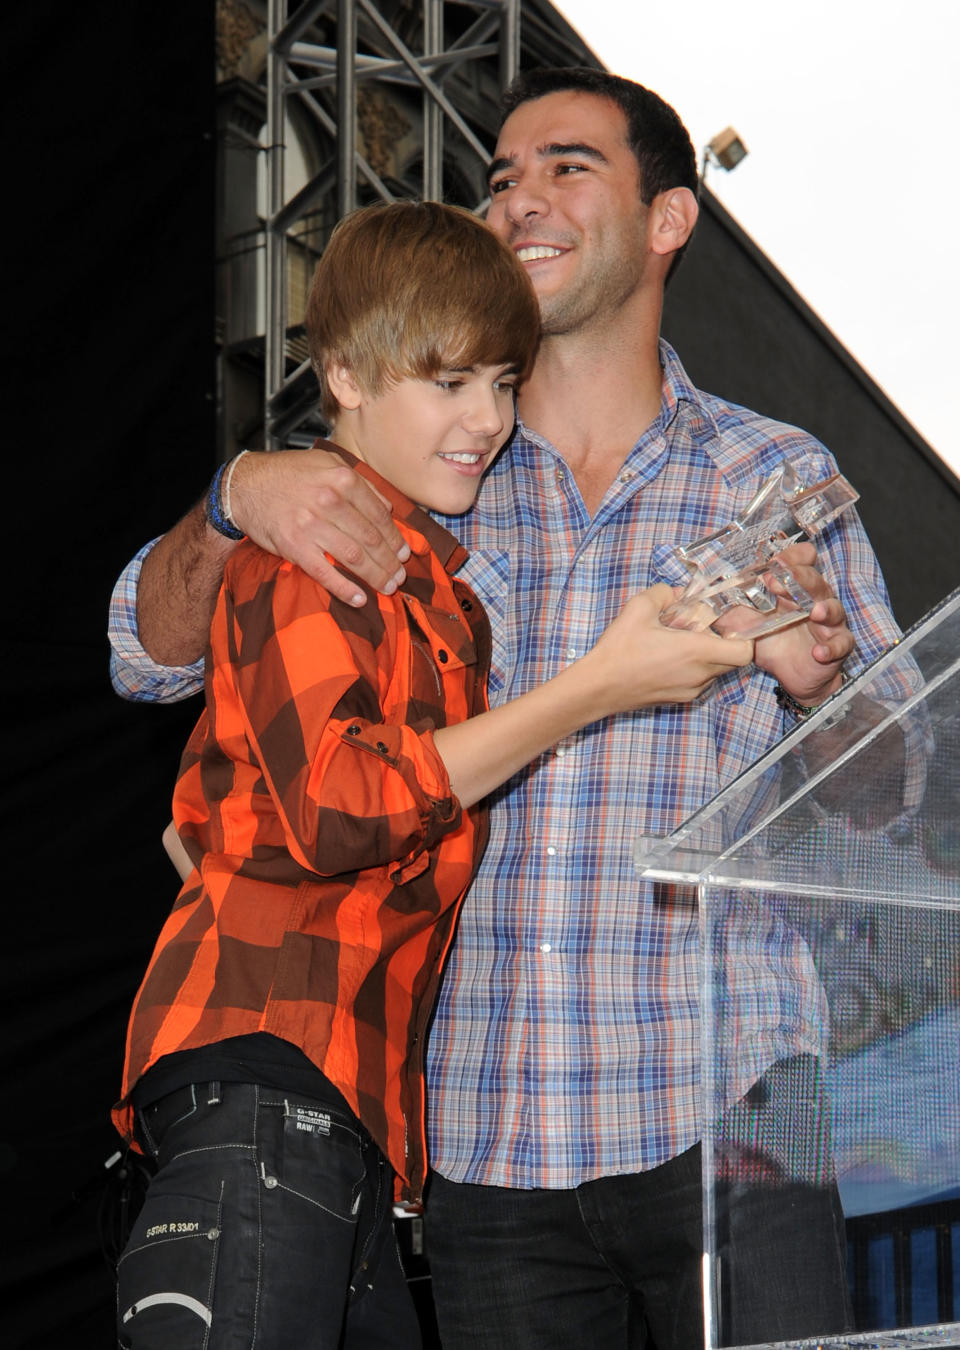 Justin Bieber and Scooter Braun in 2010. (Frazer Harrison/WireImage)